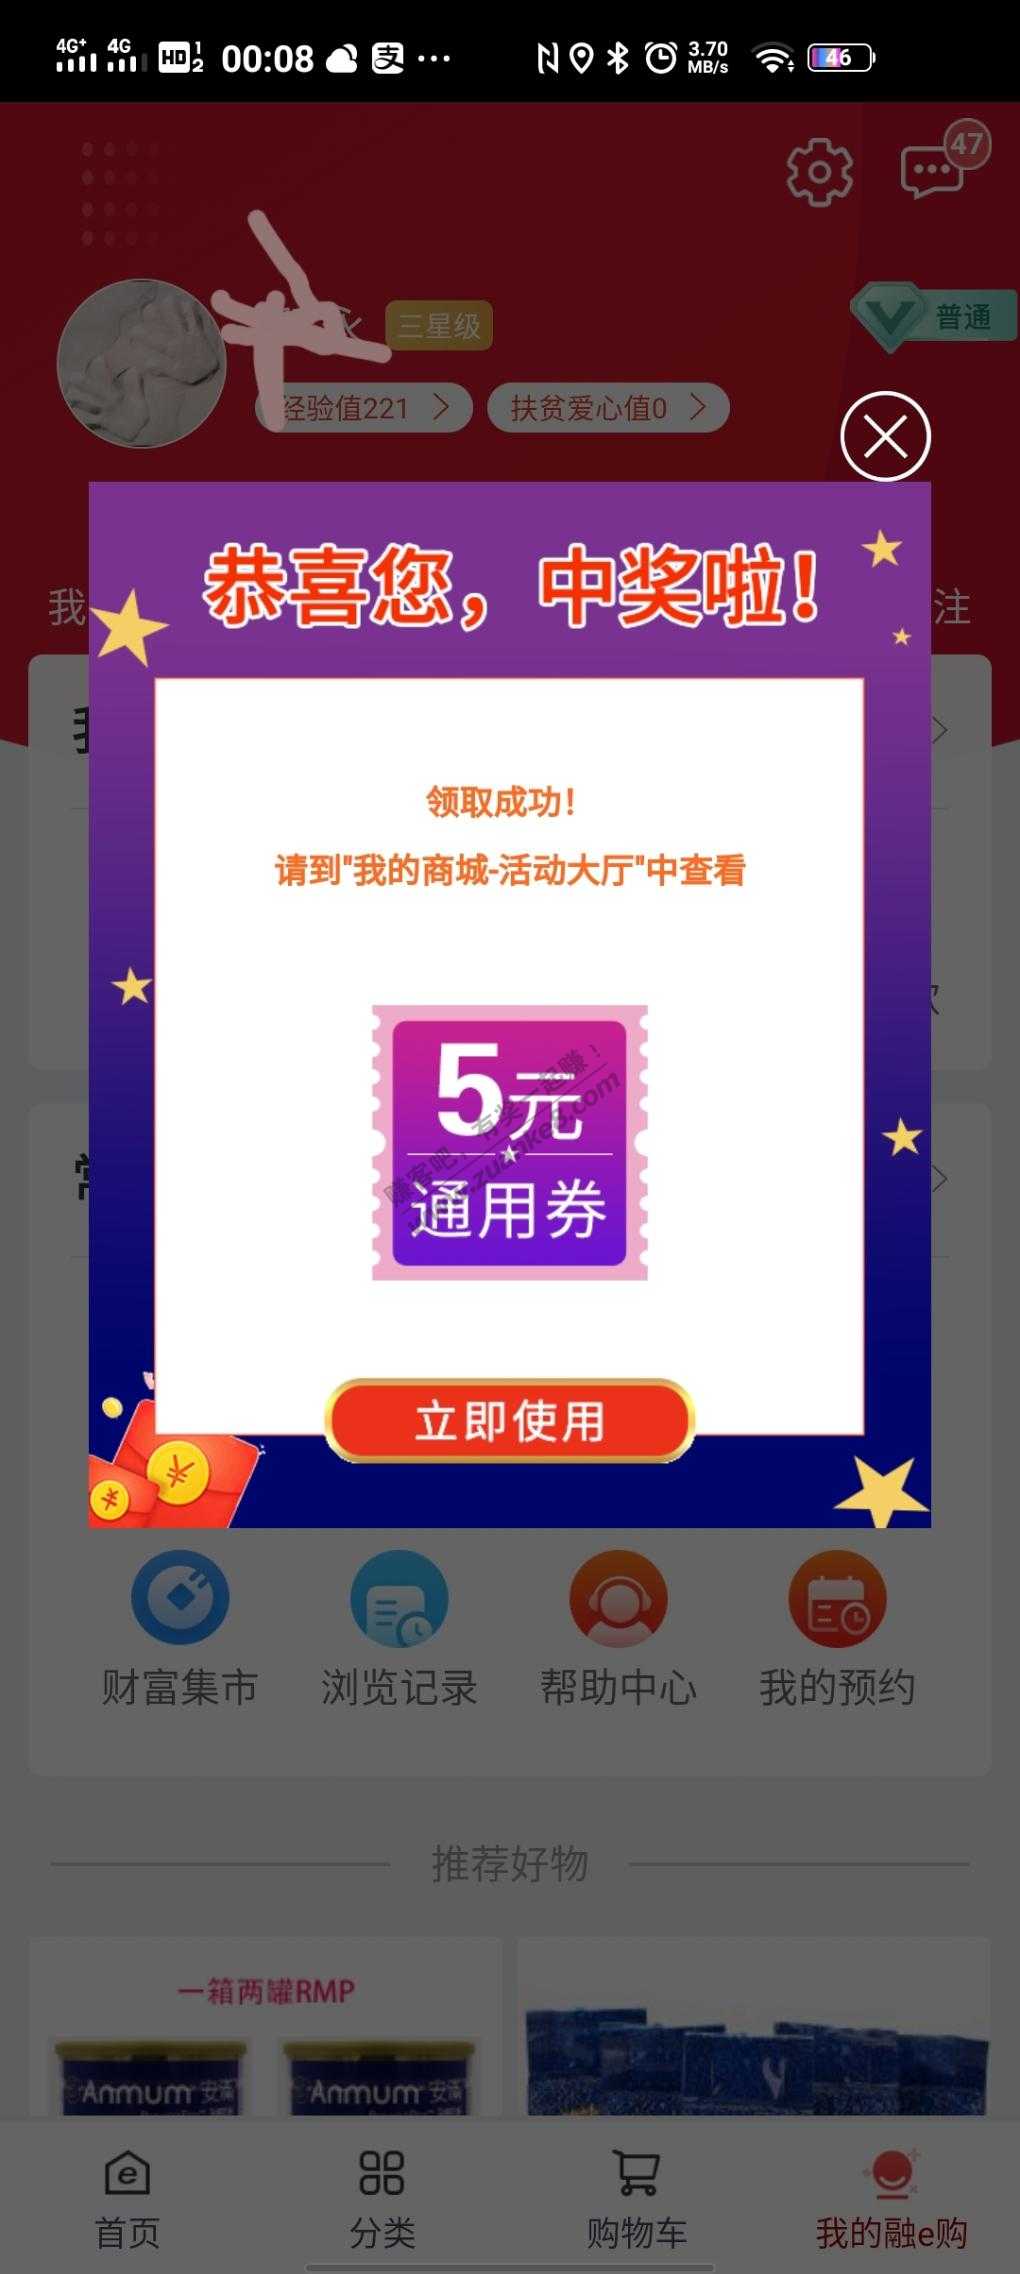 融e购进入首页抽奖-惠小助(52huixz.com)